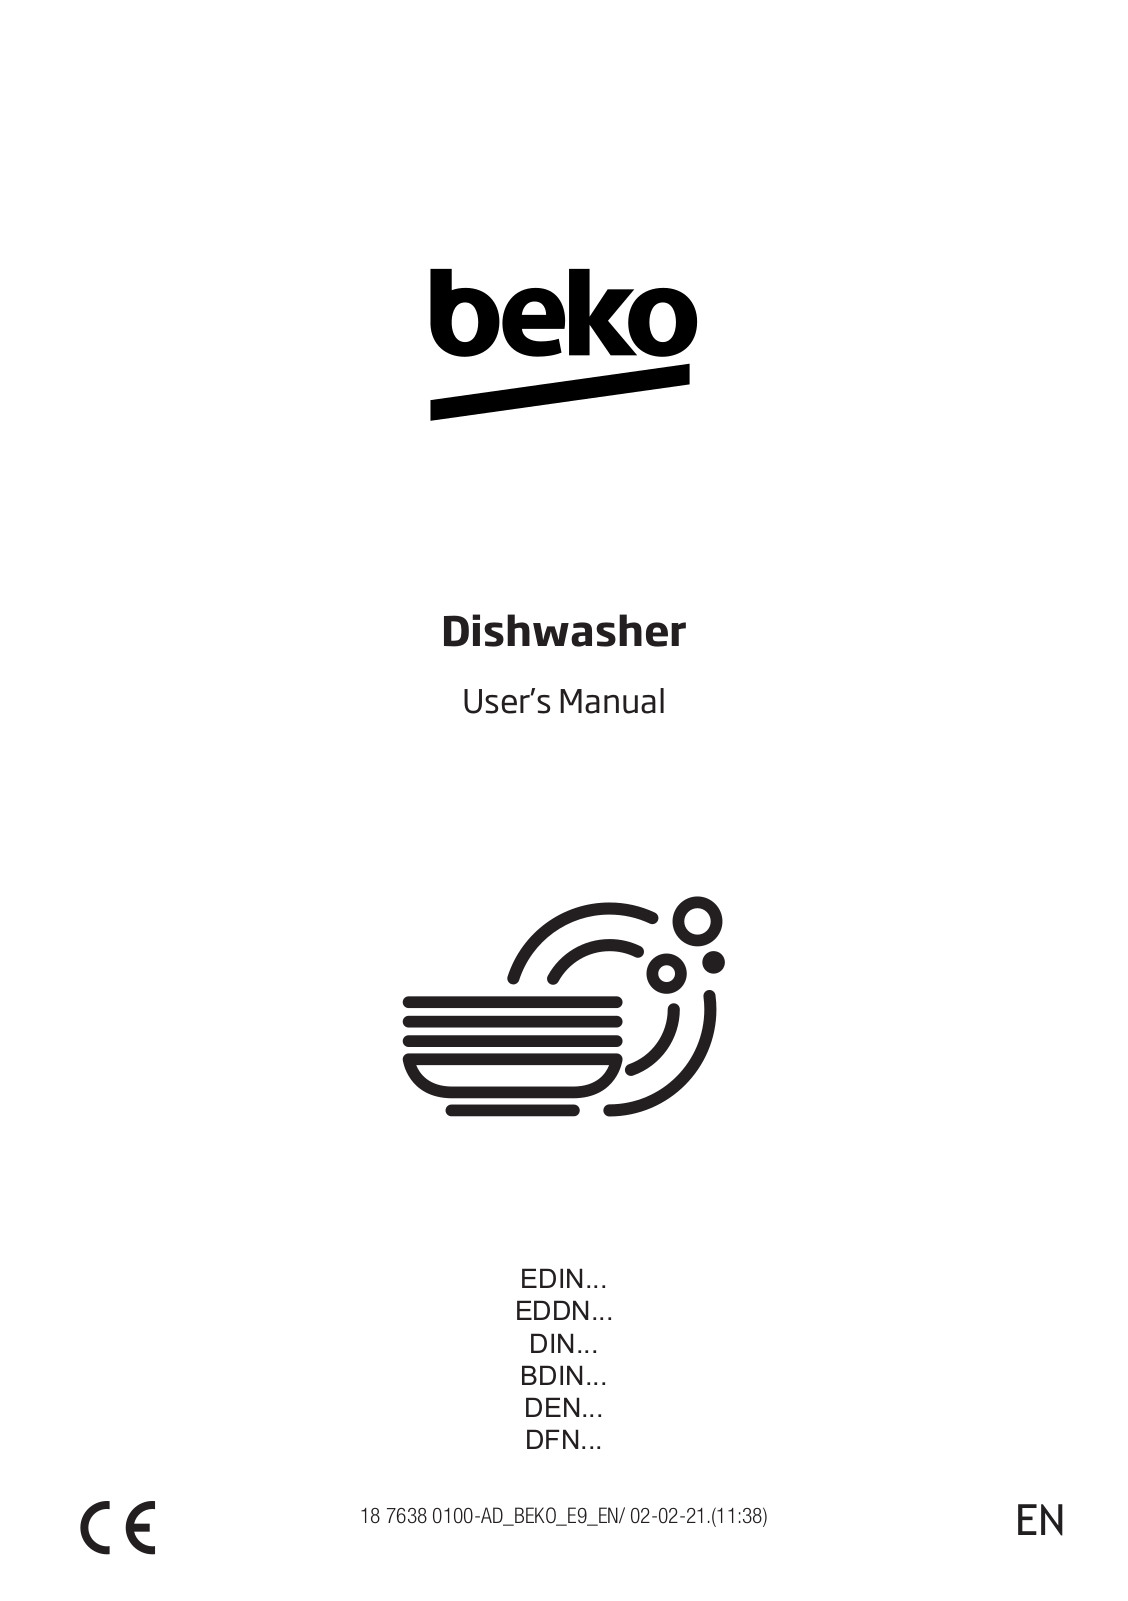 Beko DFN38532X, BDIN38531D, DIN48535 User manual